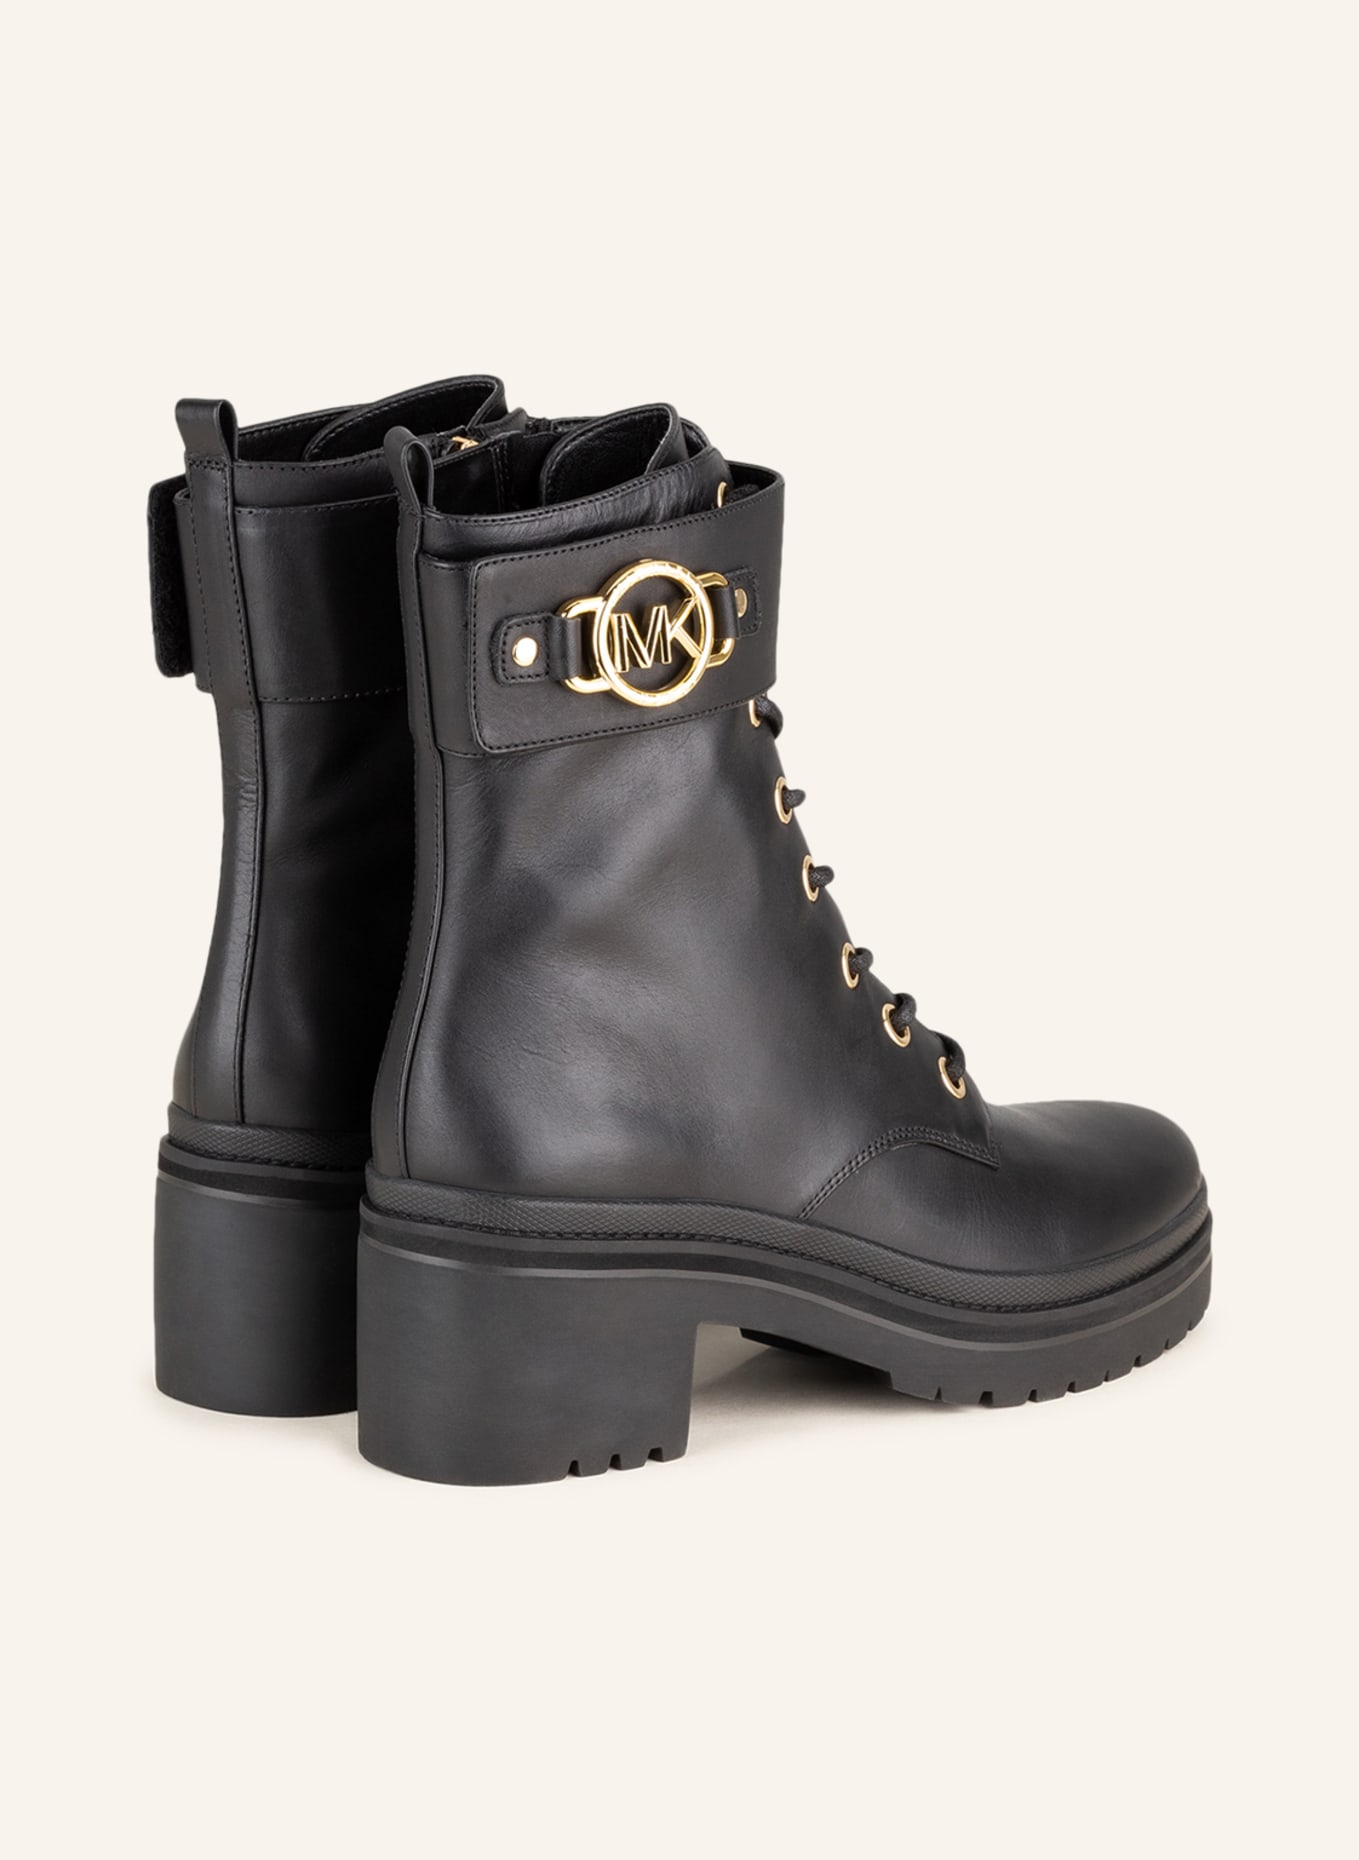 MICHAEL KORS Lace-up boots, Color: BLACK (Image 2)